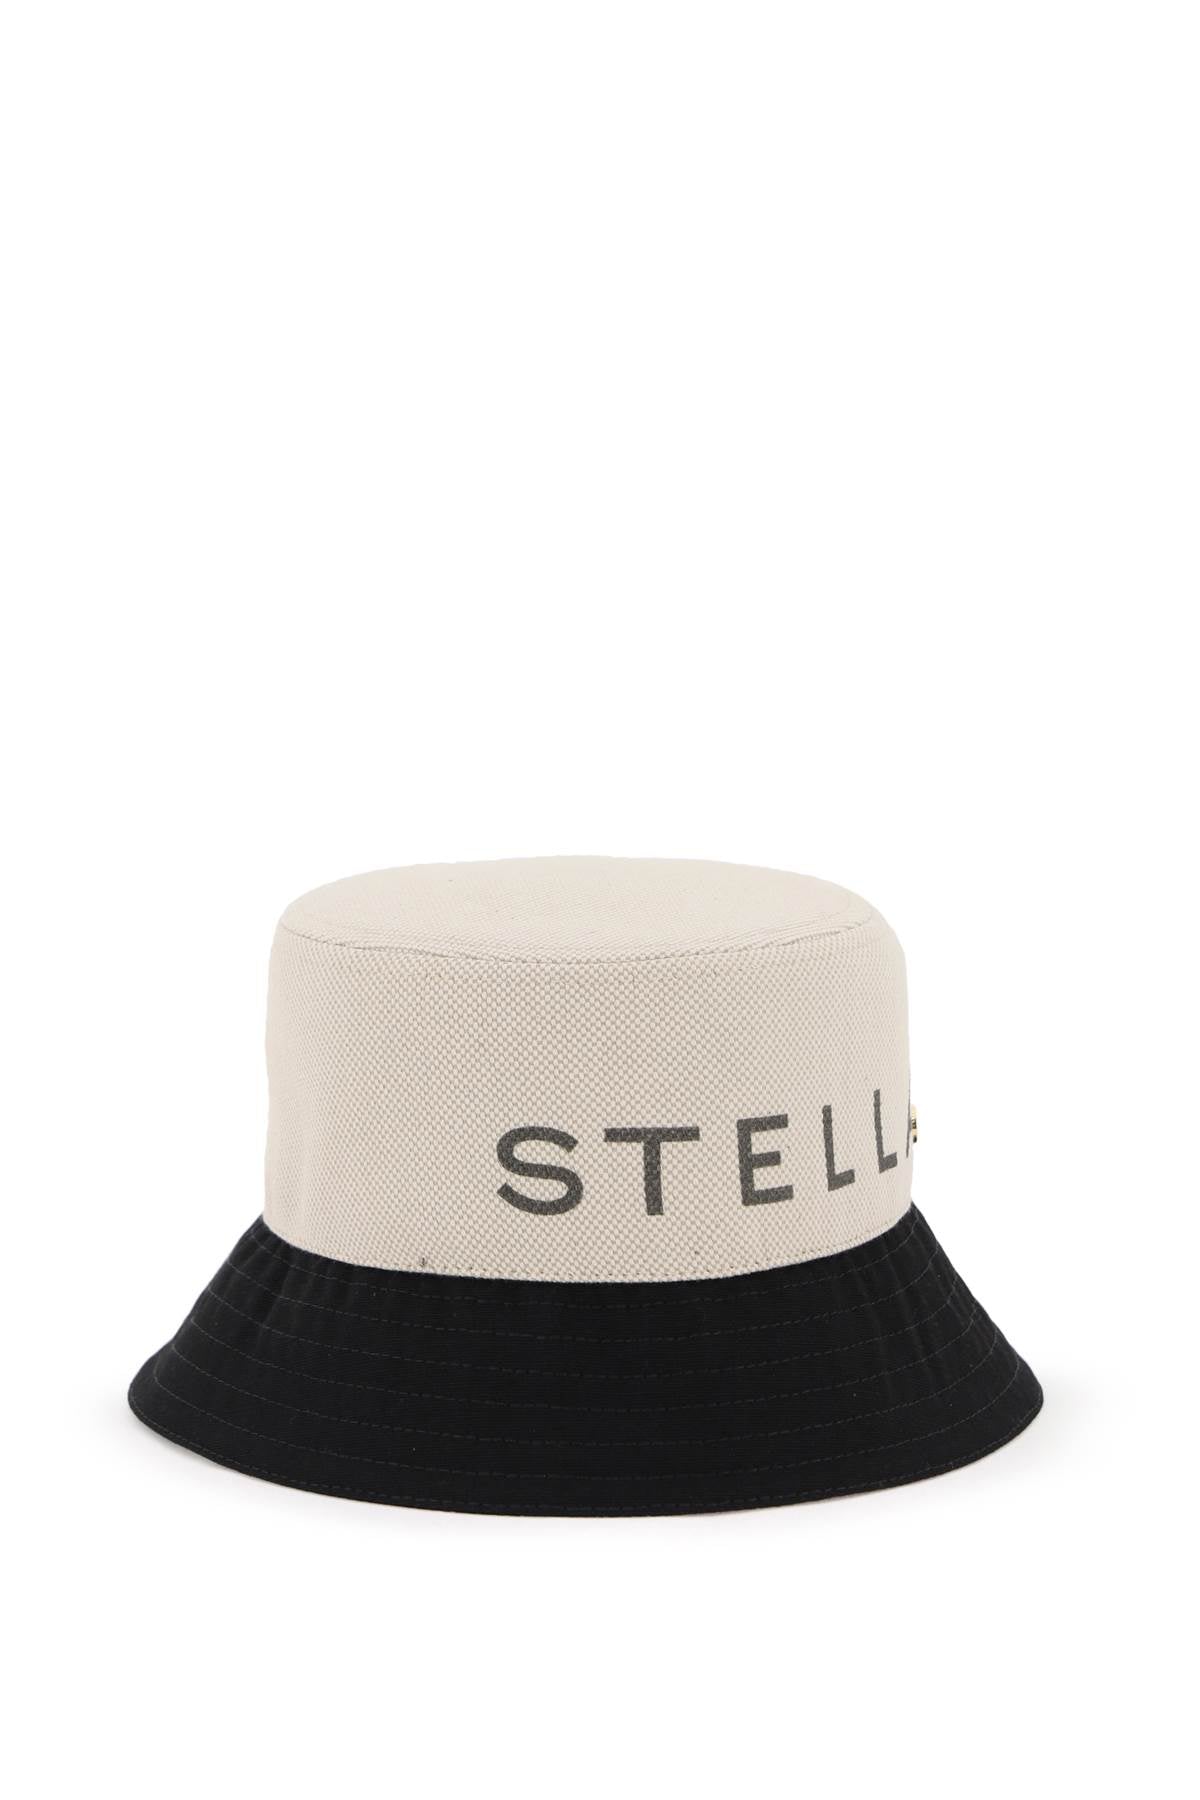 Stella McCartney STELLA MCCARTNEY Hat cream 7V0076WP03329043